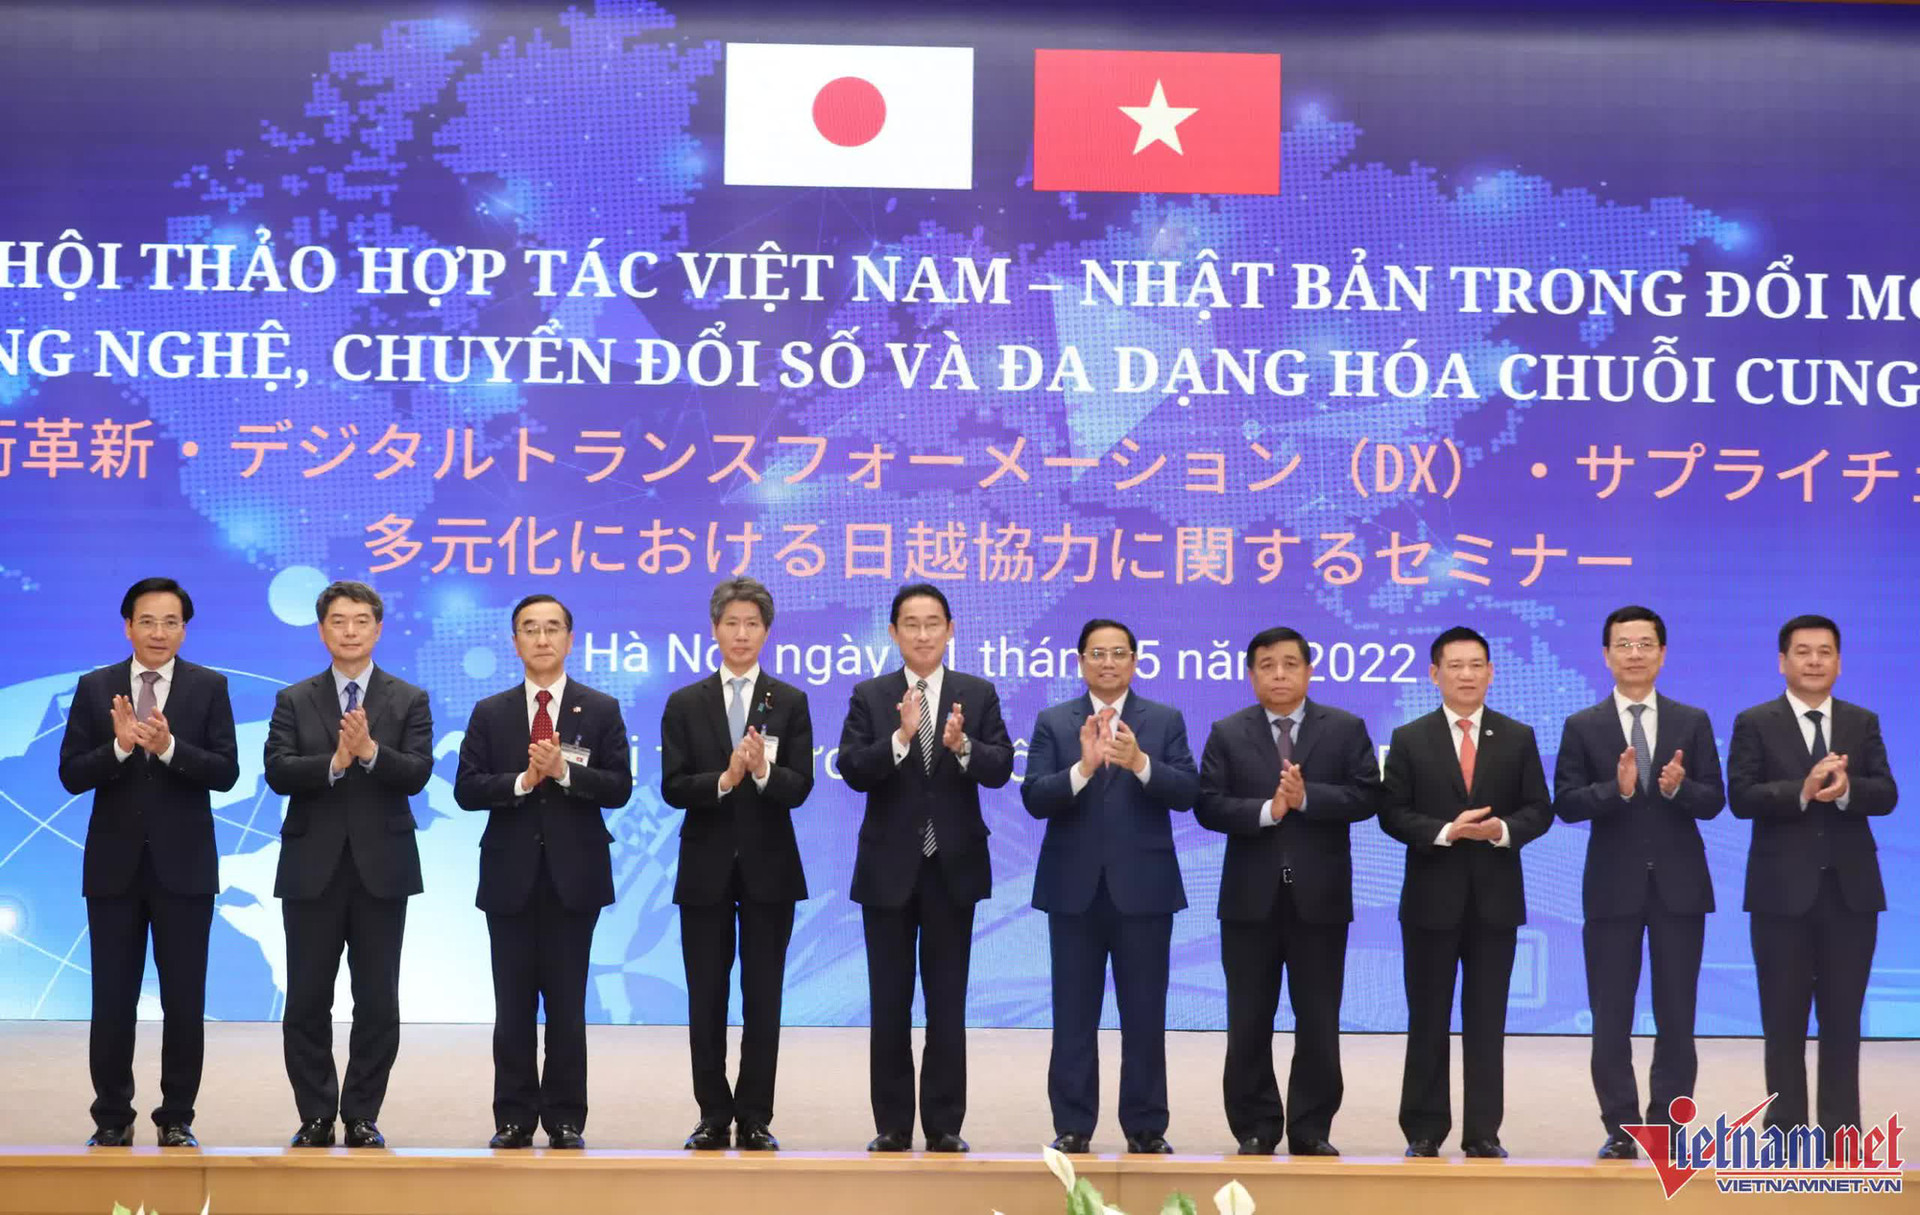 Nhật Bản - Việt Nam kỳ vọng giải quyết các vấn đề kinh tế thông qua chuyển đổi số - Ảnh 3.